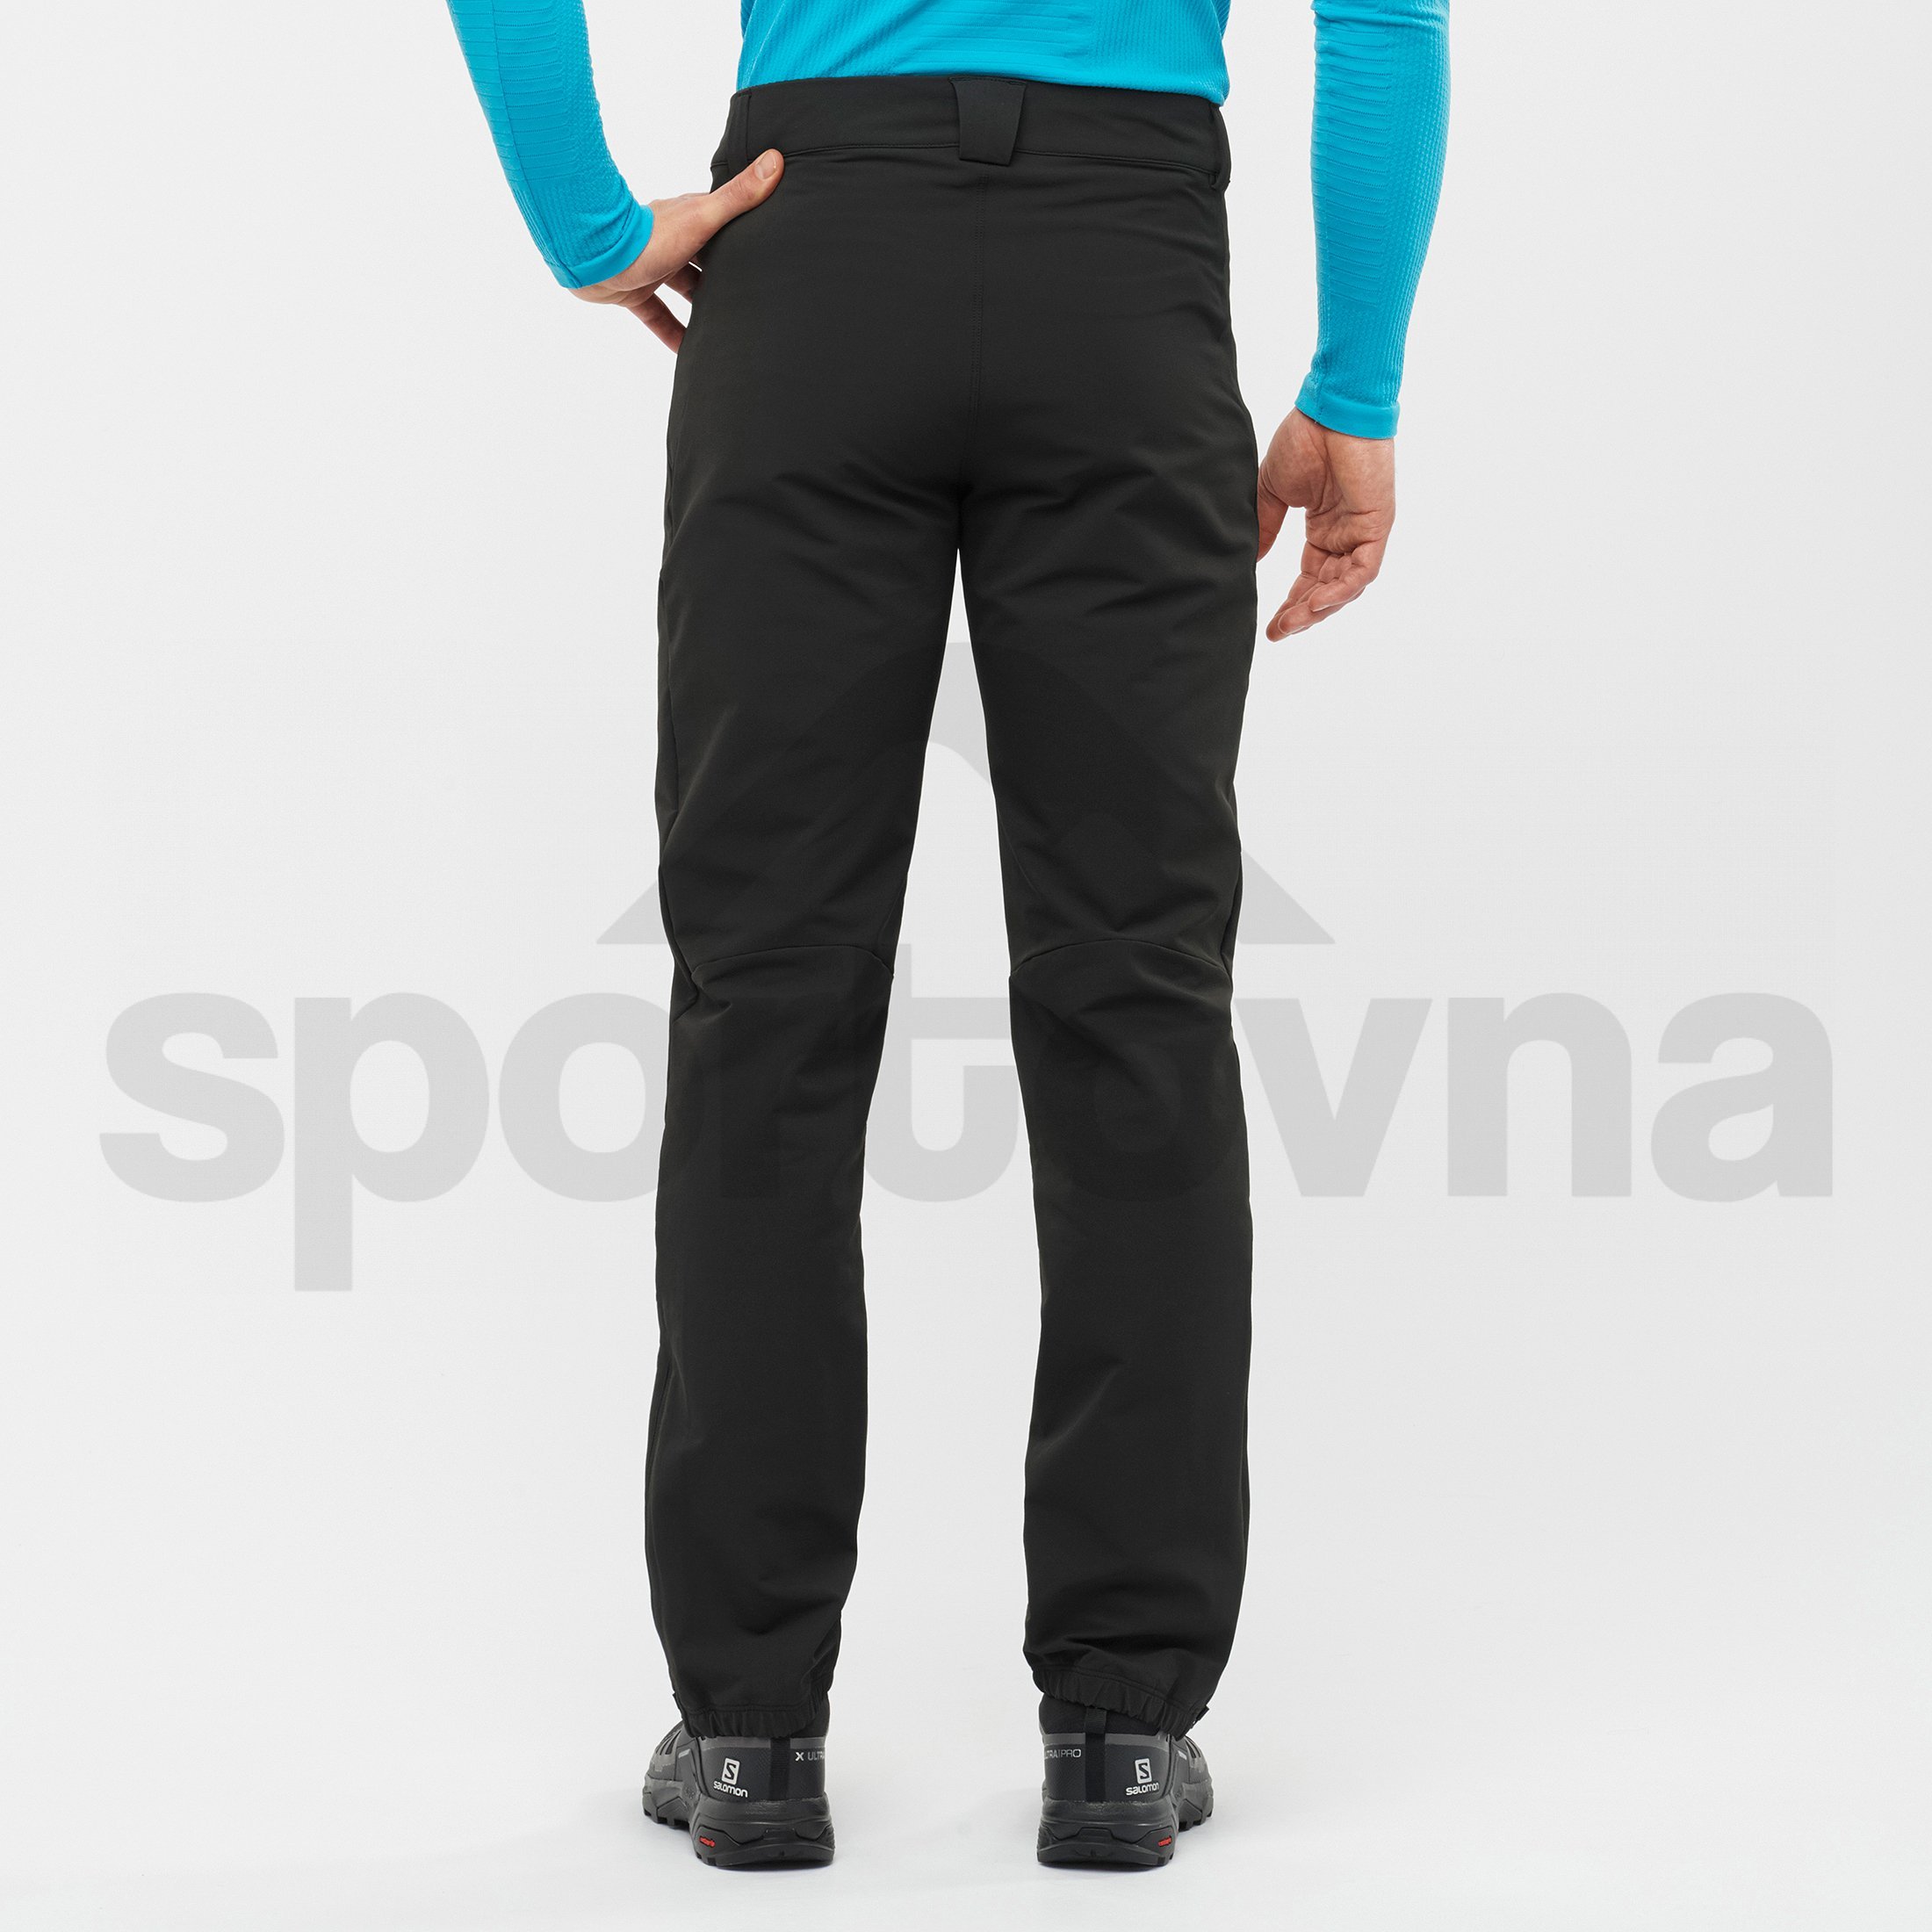 Kalhoty Salomon OUTPEAK WARM PANT M - černá (prodloužená délka)